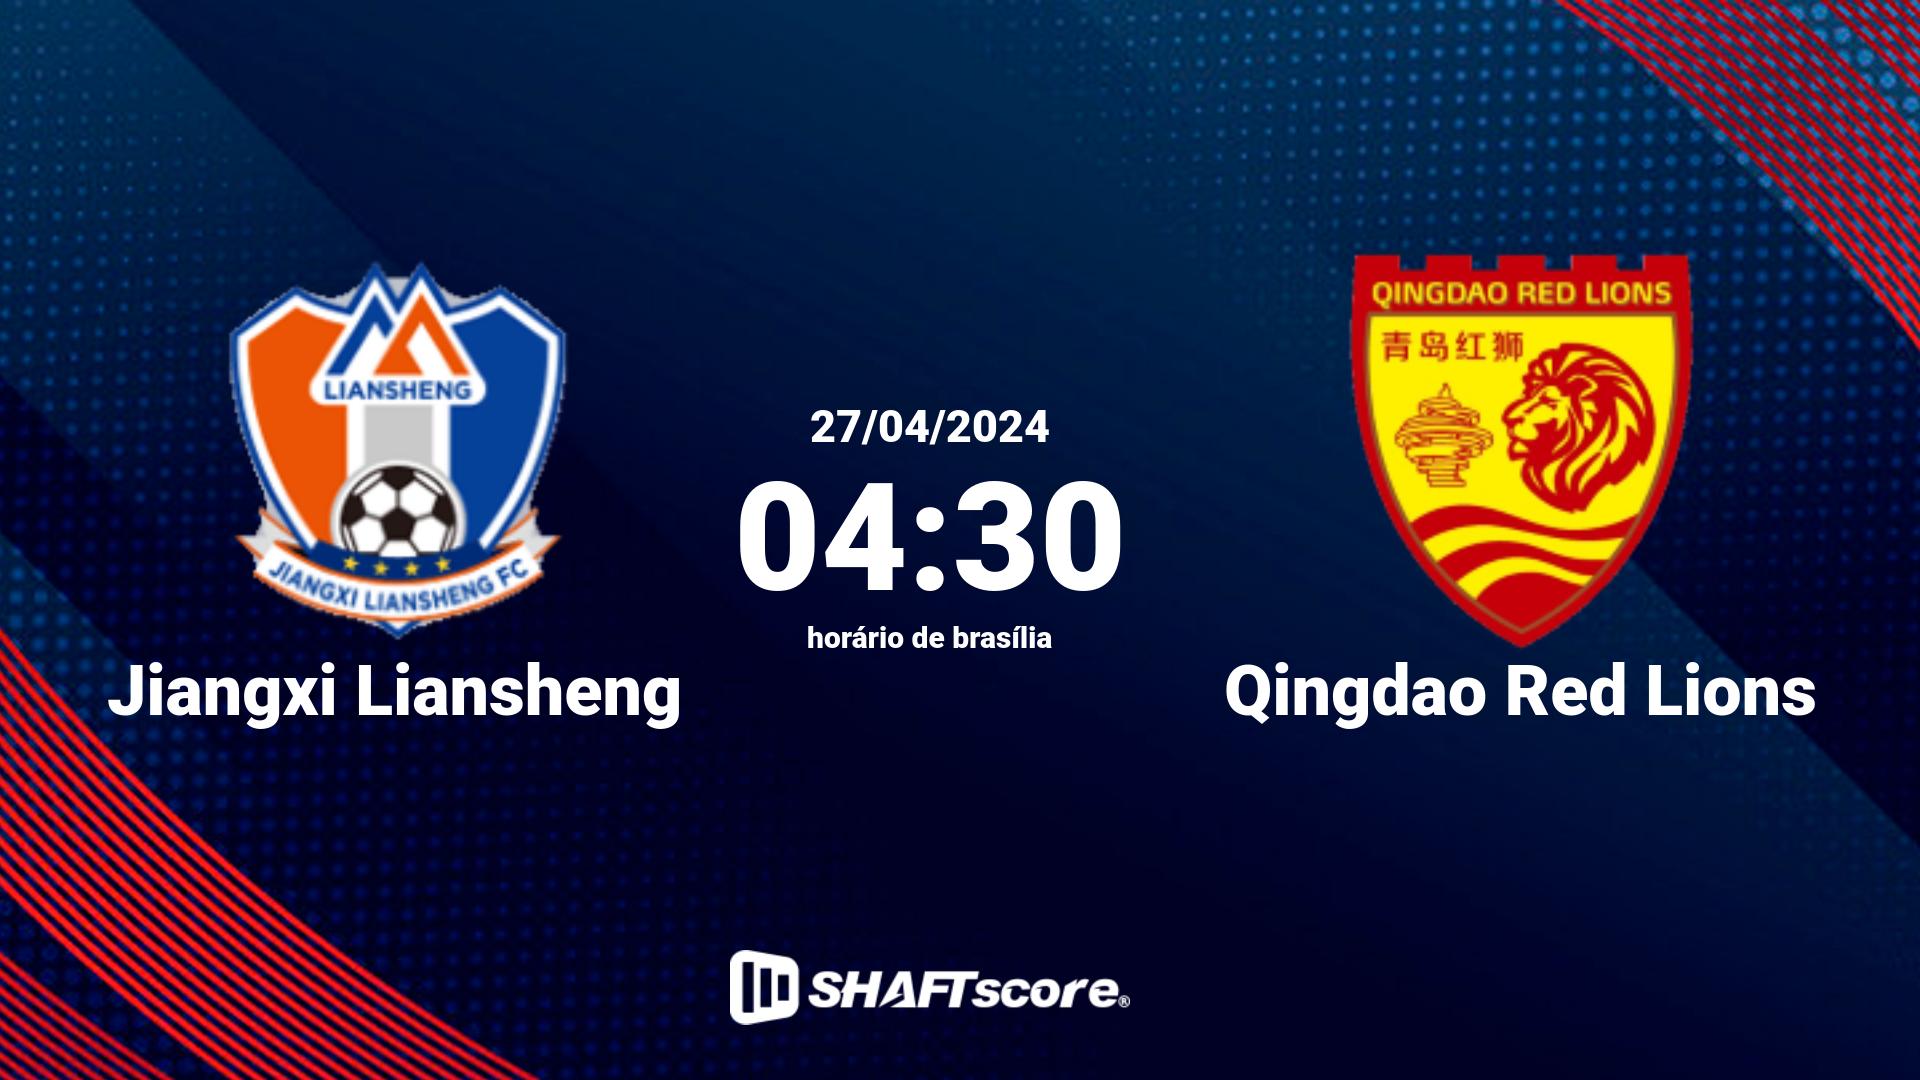 Estatísticas do jogo Jiangxi Liansheng vs Qingdao Red Lions 27.04 04:30